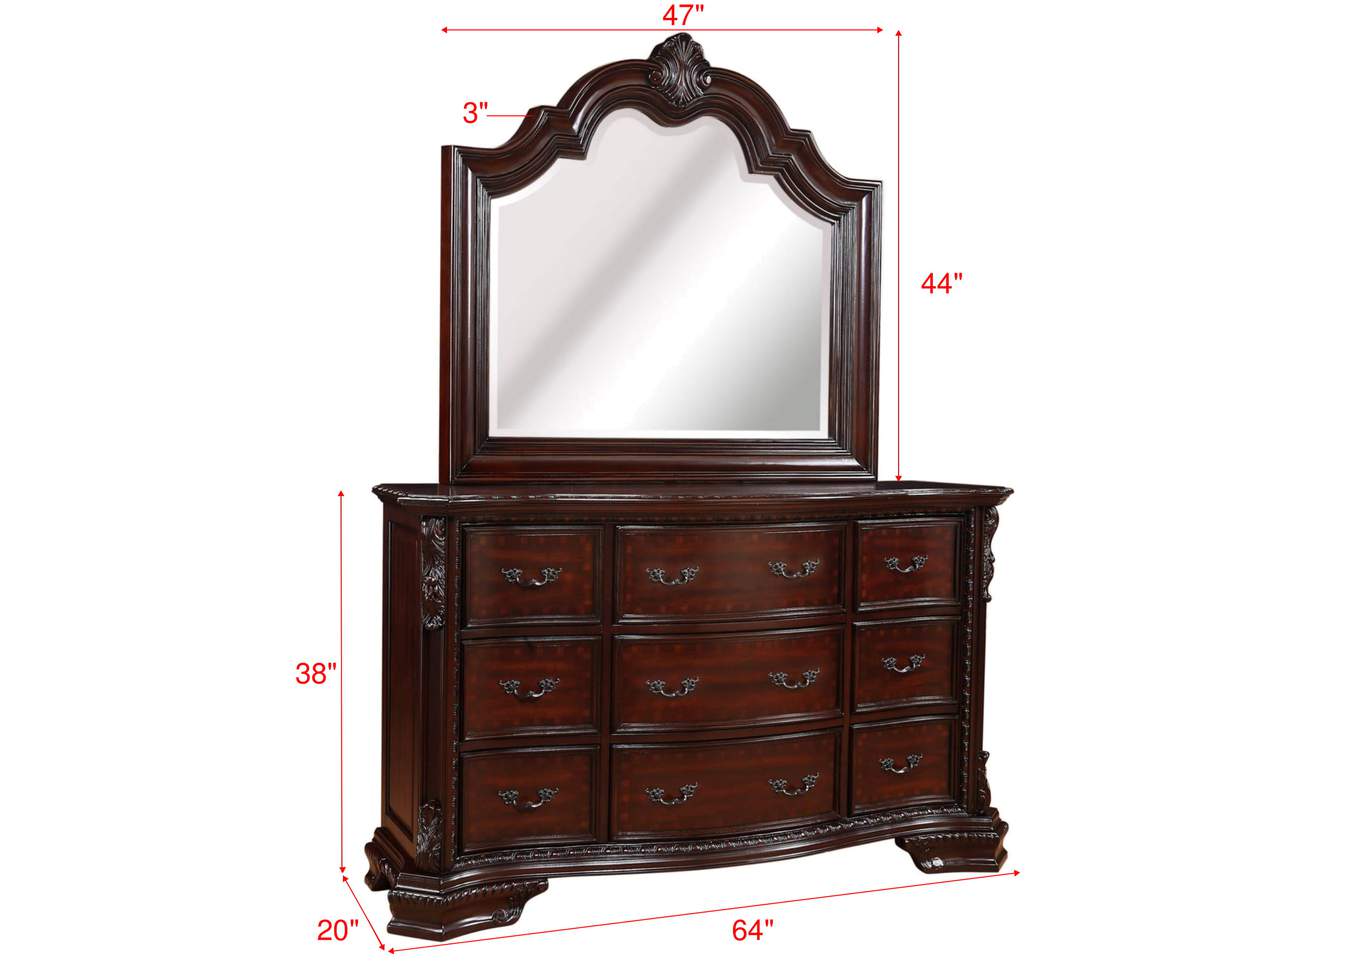 Sheffield King Bed W/ Dresser, Mirror, Nightstand,Crown Mark